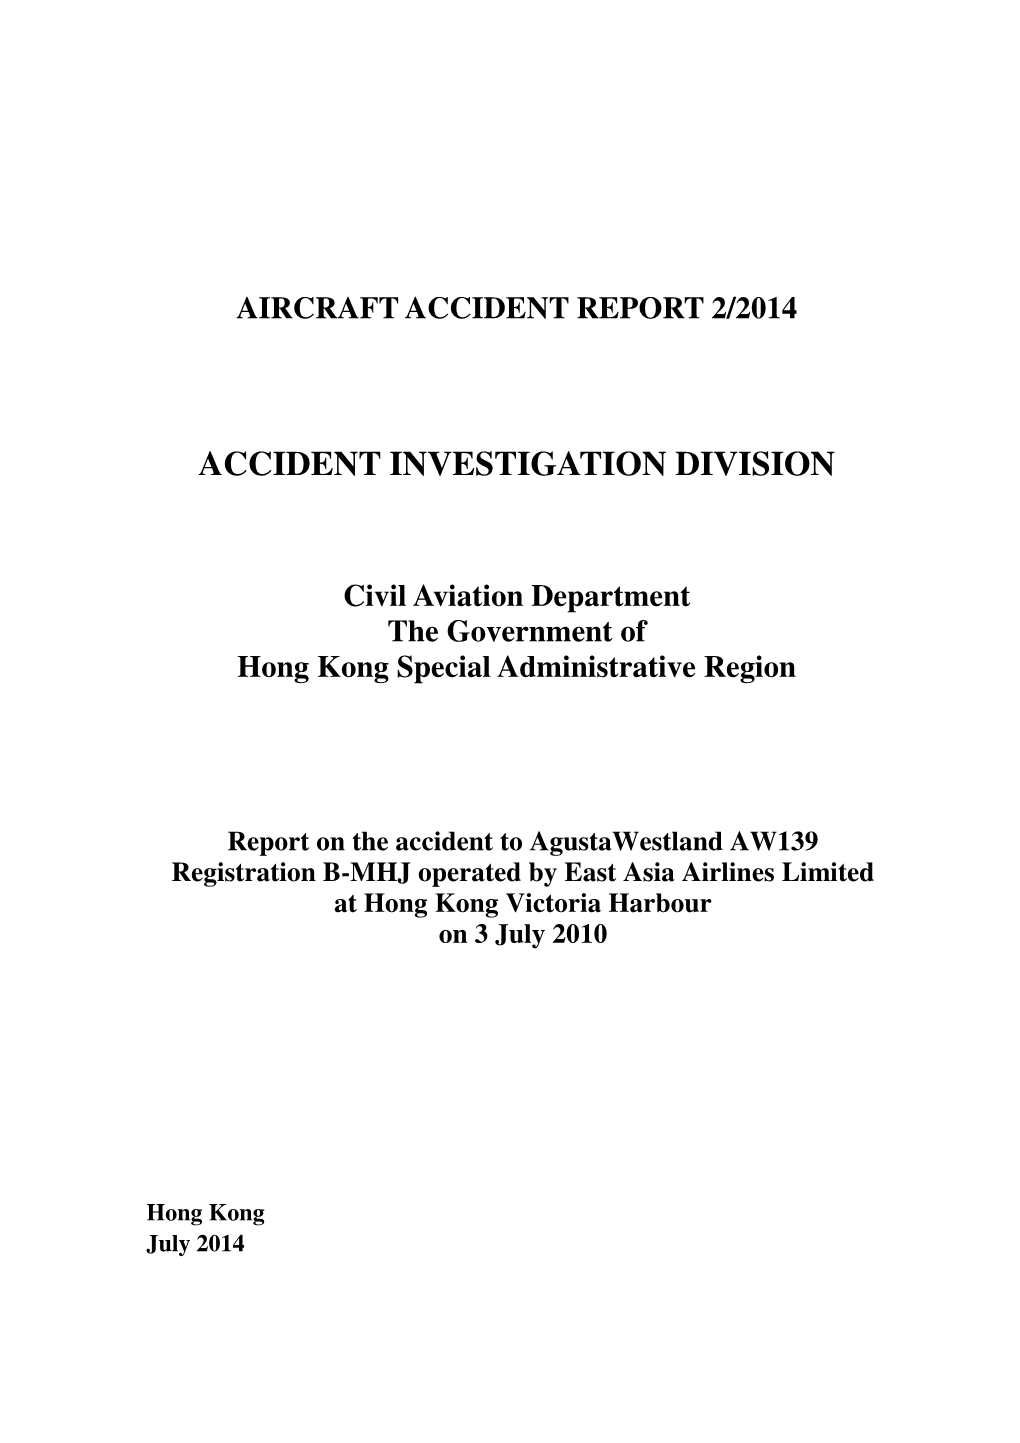 Final Report on Agustawestland AW139 Registration B-MHJ